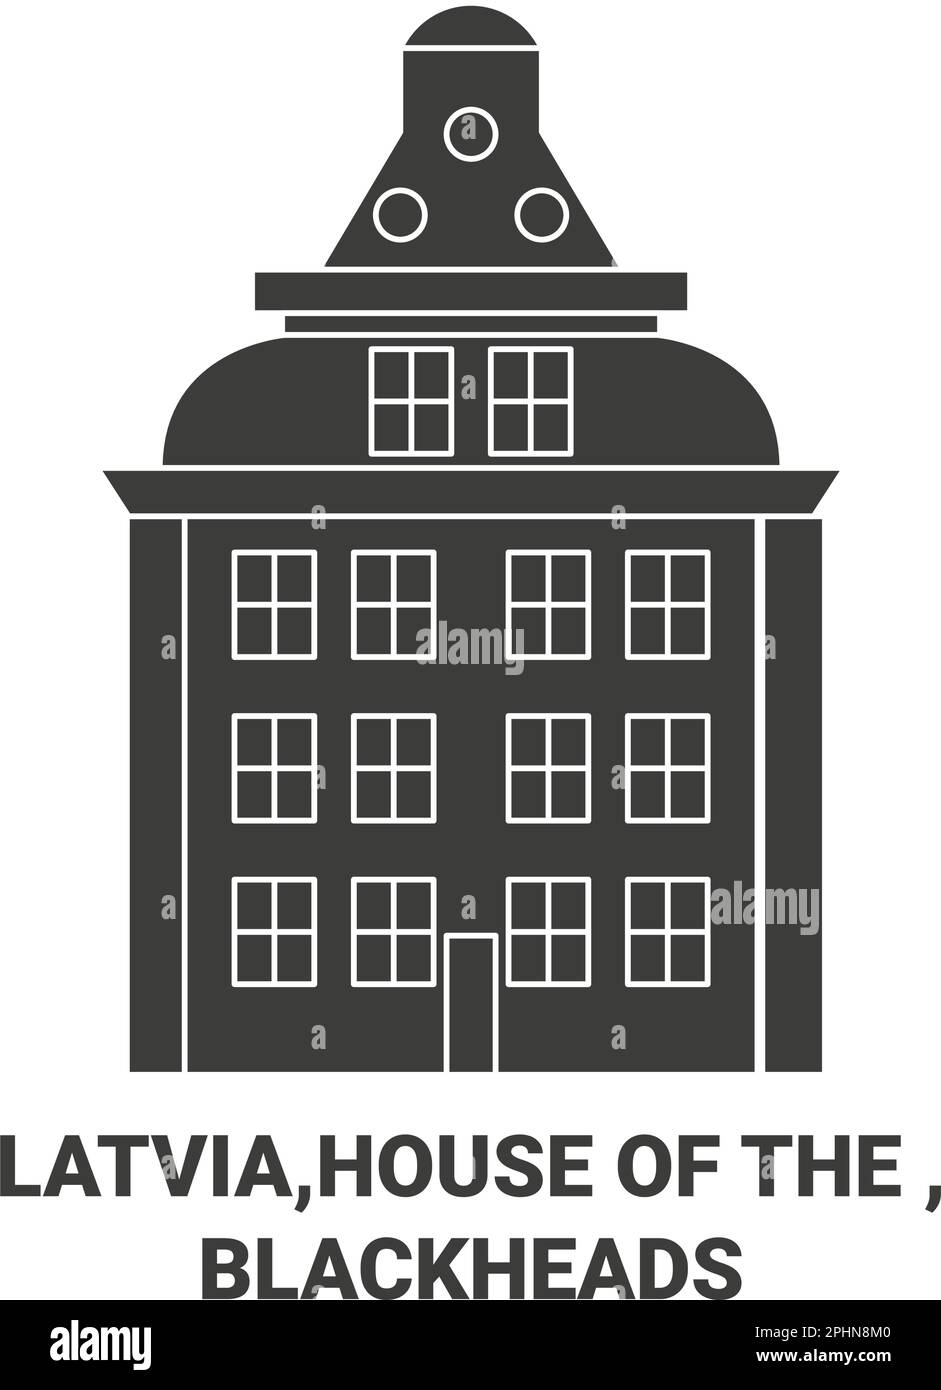 Lettonie,Maison de la , Blackheads Voyage repère illustration vecteur Illustration de Vecteur